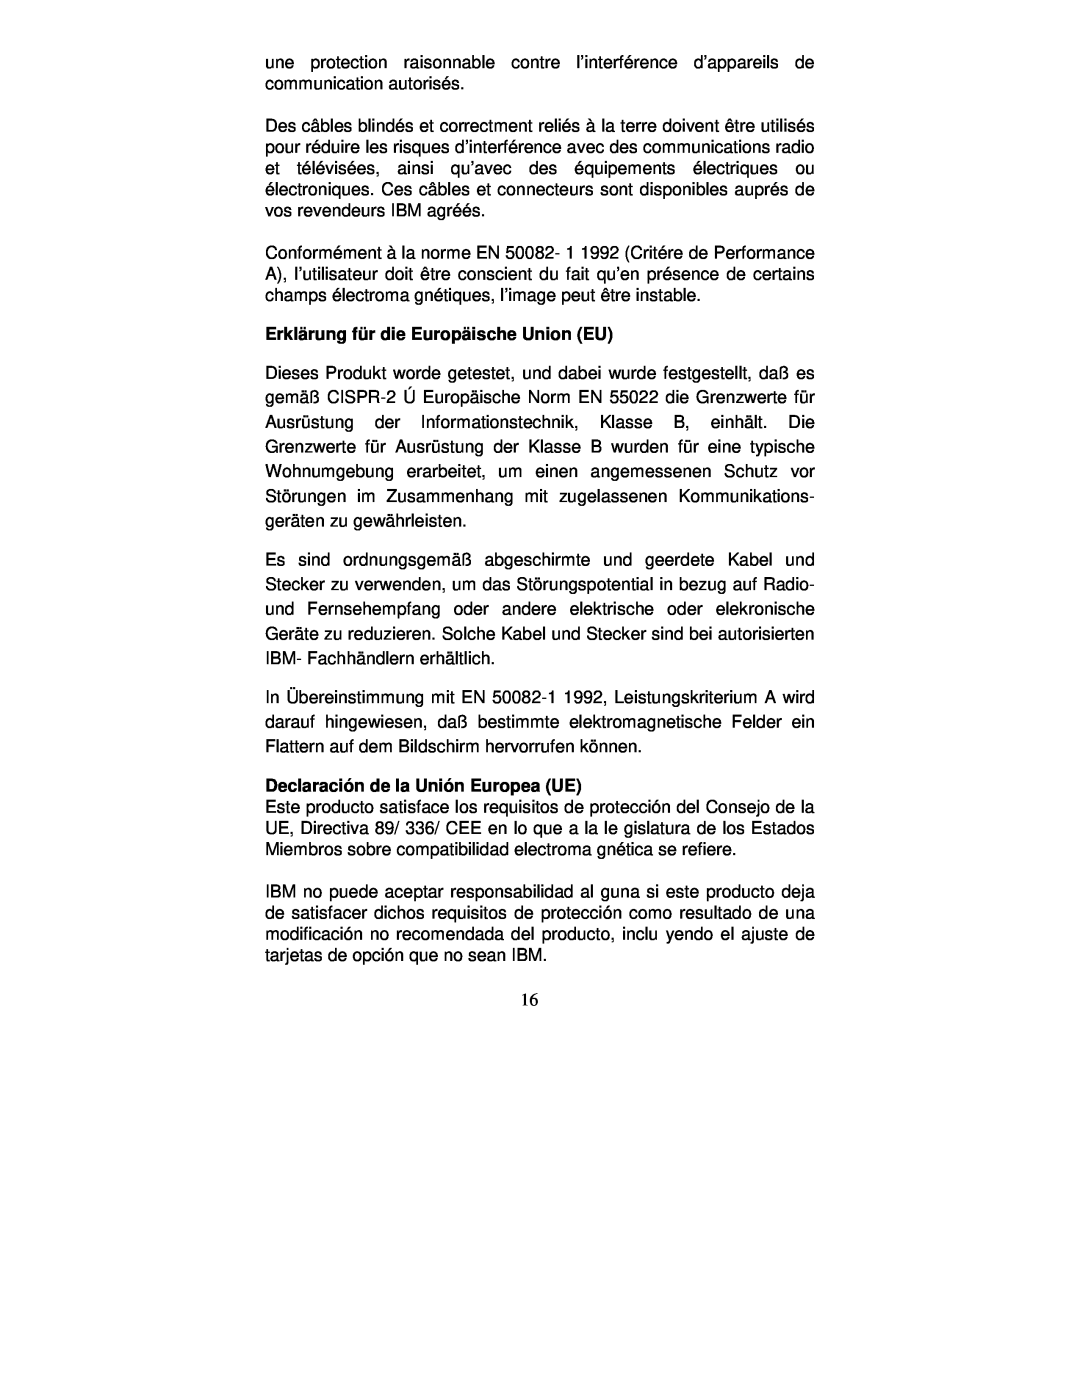 Lenovo 22P4585, E40, 2248-0CN, 2248-0CE manual Erklärung für die Europäische Union EU, Declaración de la Unión Europea UE 